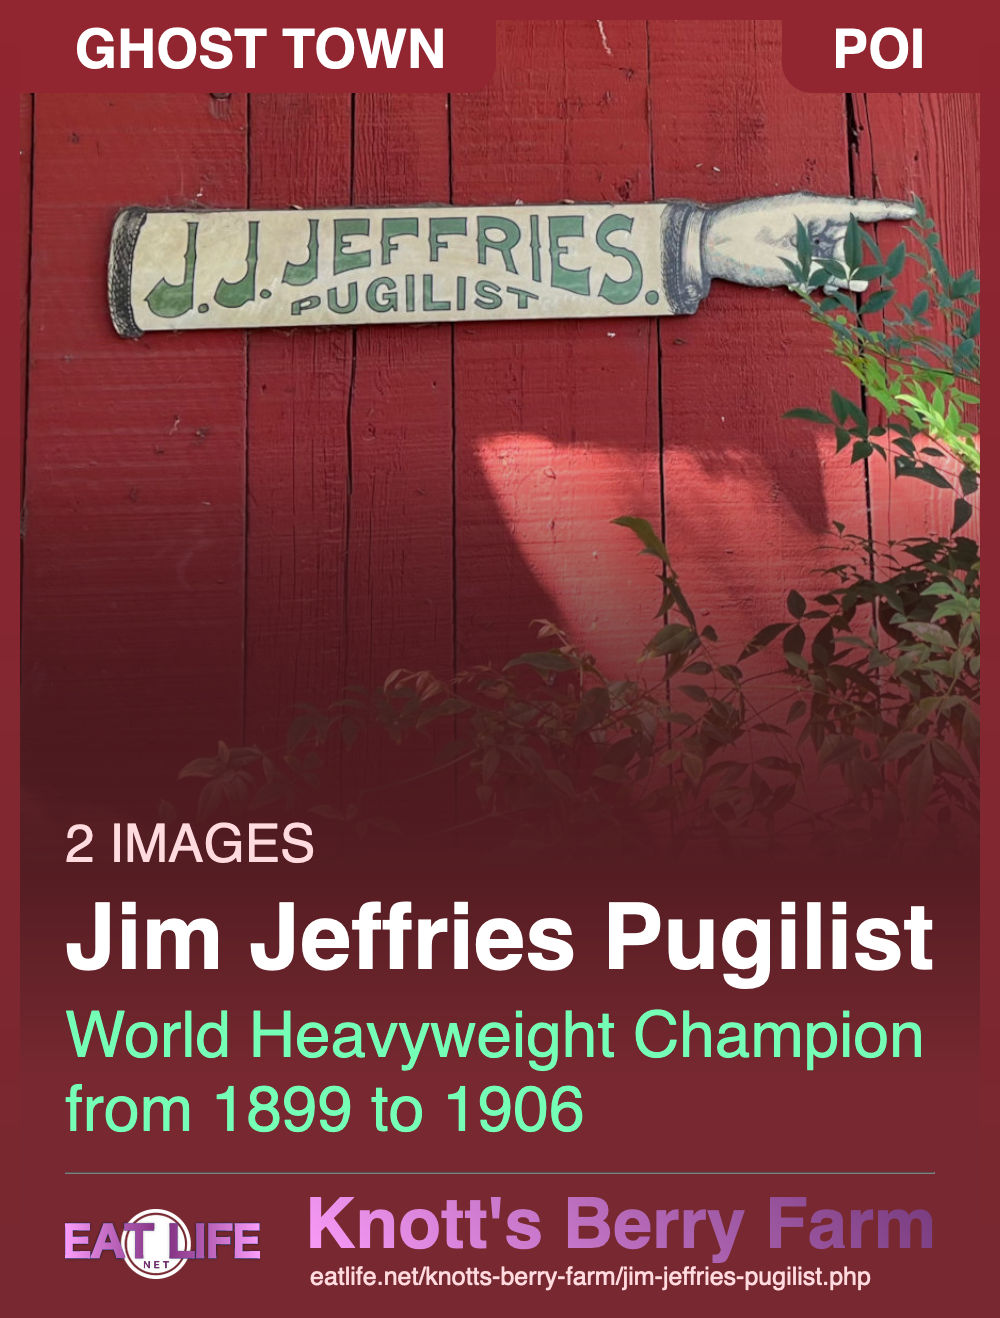 Jim Jeffries Pugilist